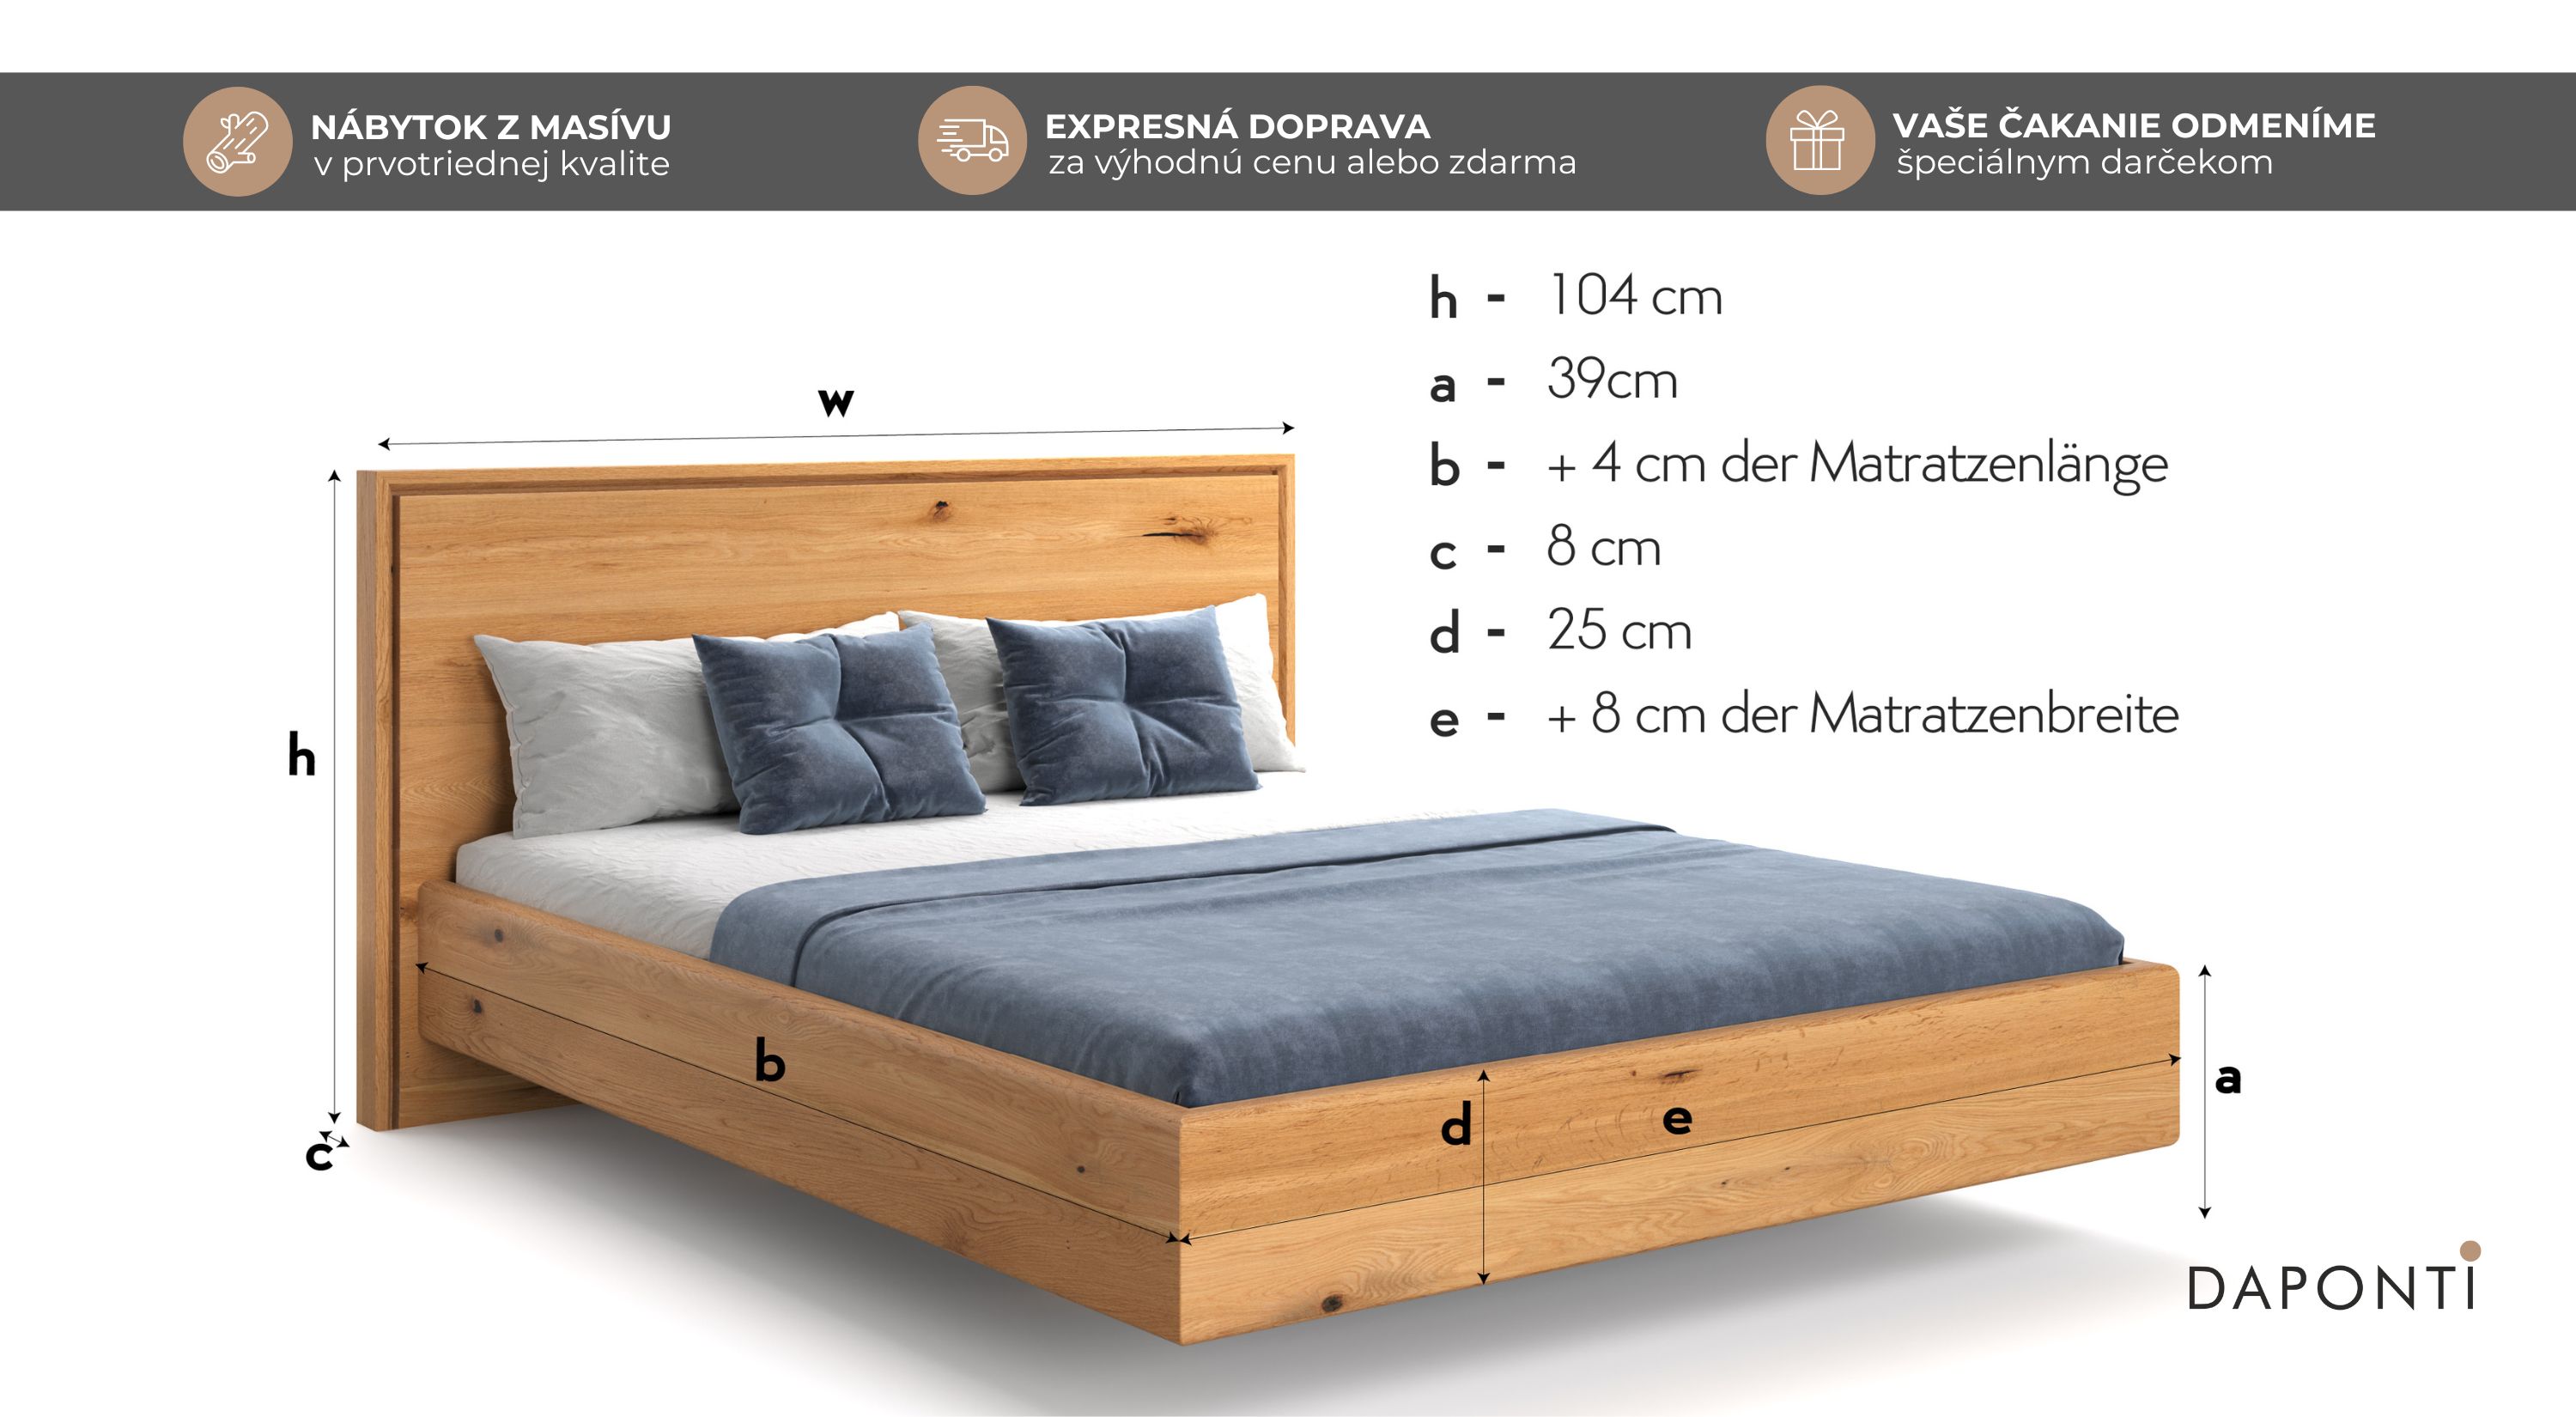 Manželská postel z masívu 180x200 s efektom levitovania. Je vyrovená z masívneho dubového dreva a doplnená o prestieranie modrej farby